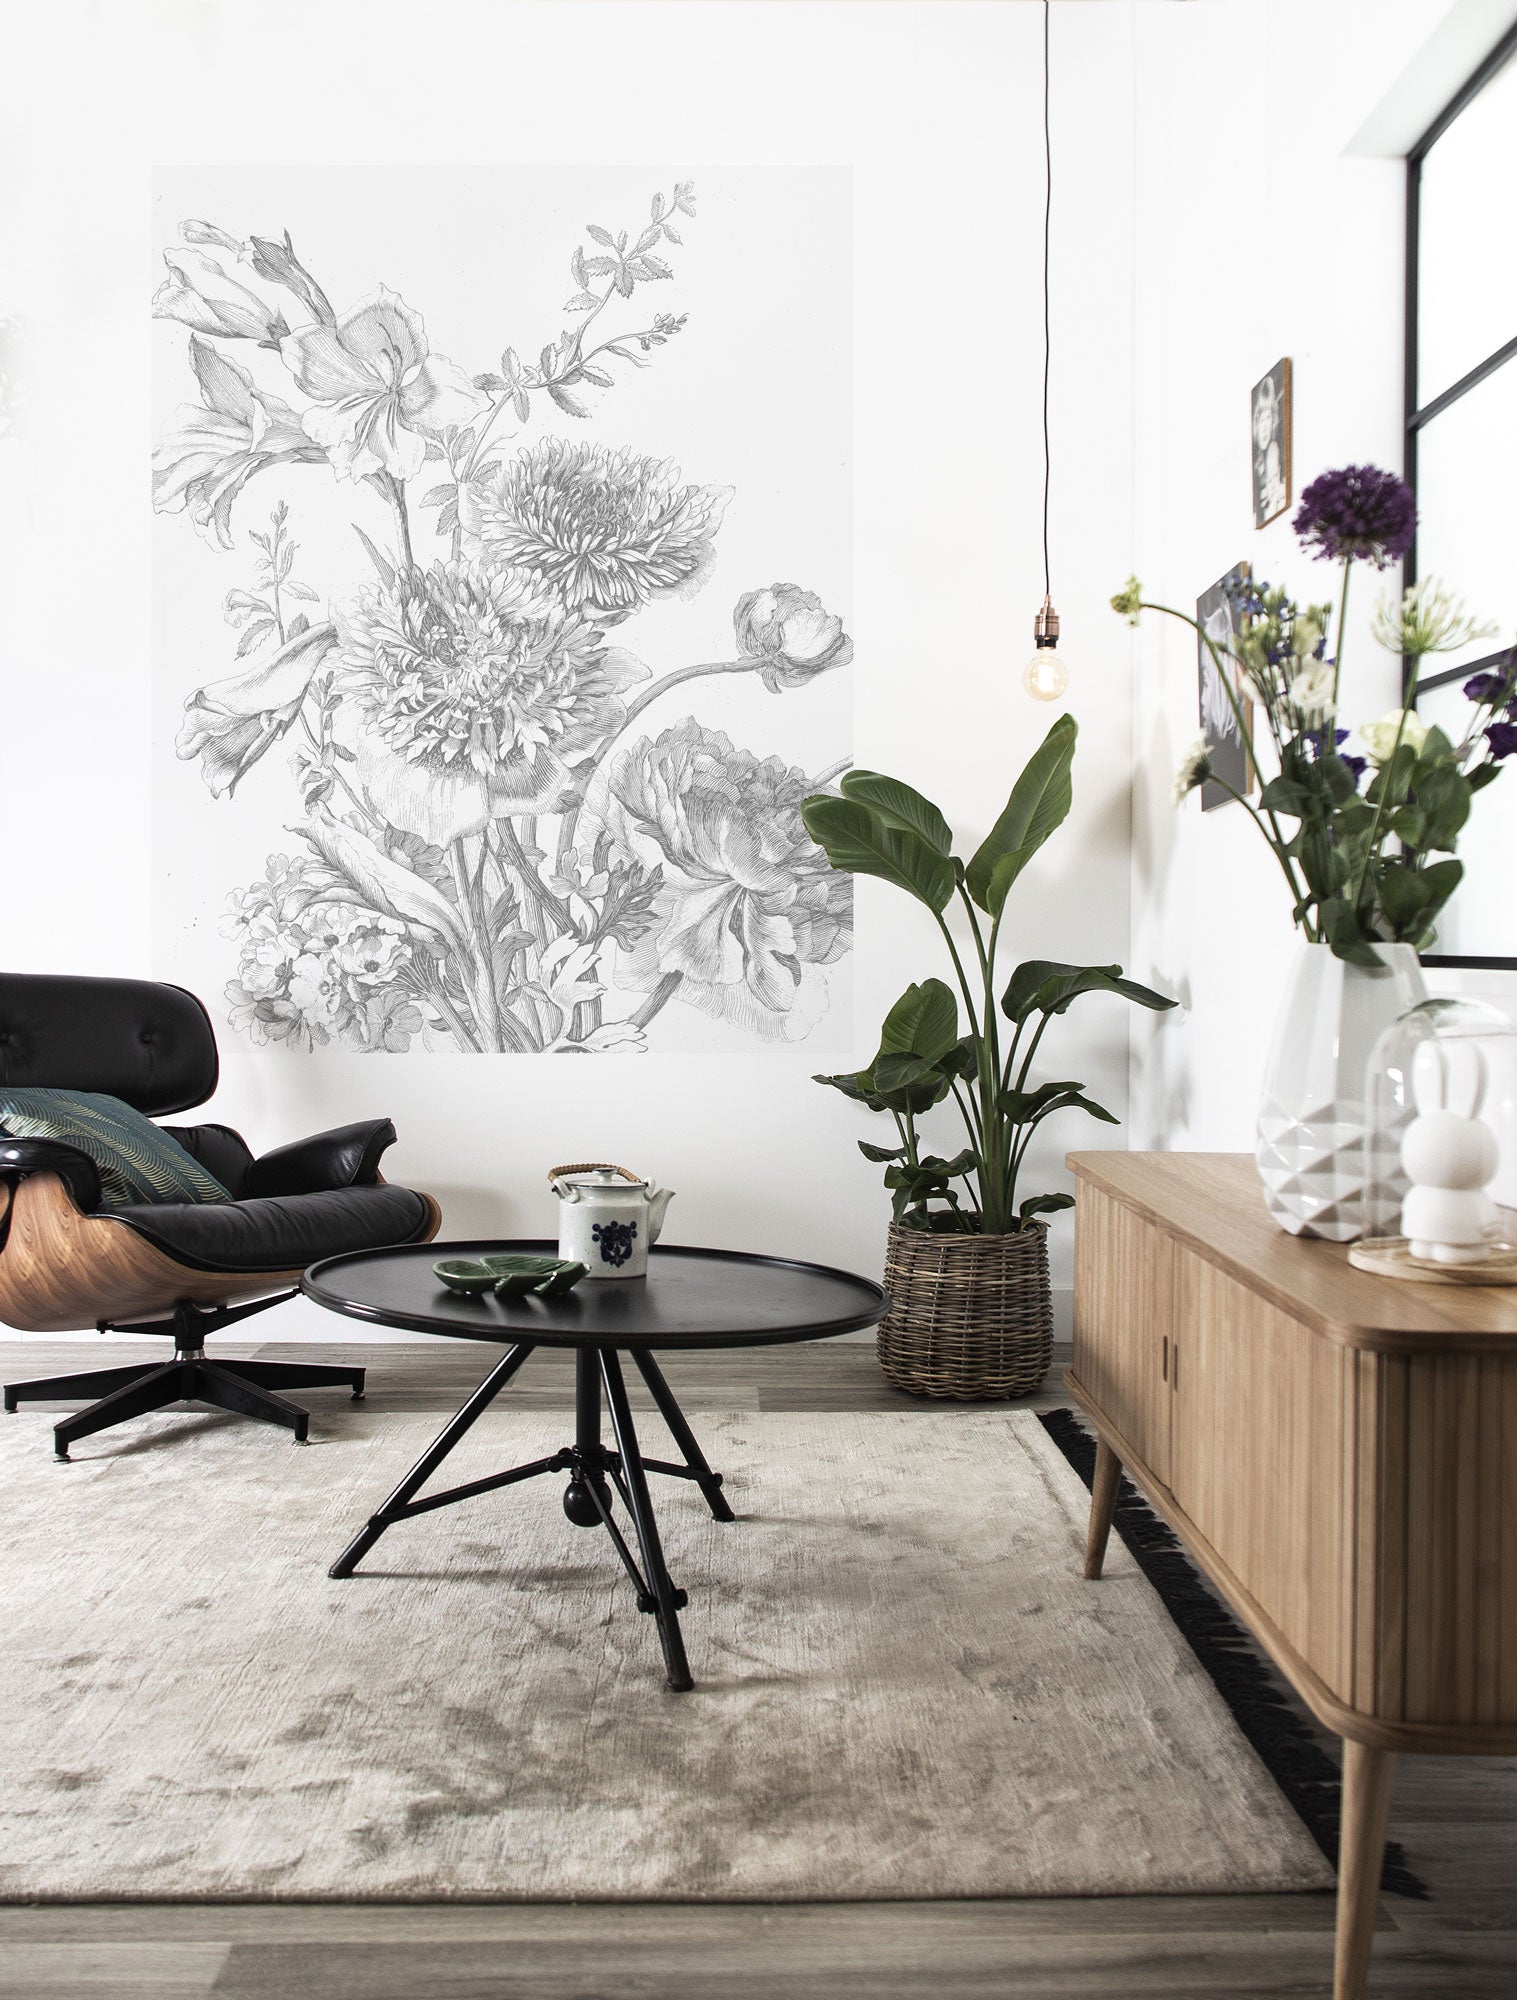 nevel ontwikkeling Centraliseren Engraved Flowers 013 Wallpaper Panel by KEK Amsterdam – BURKE DECOR